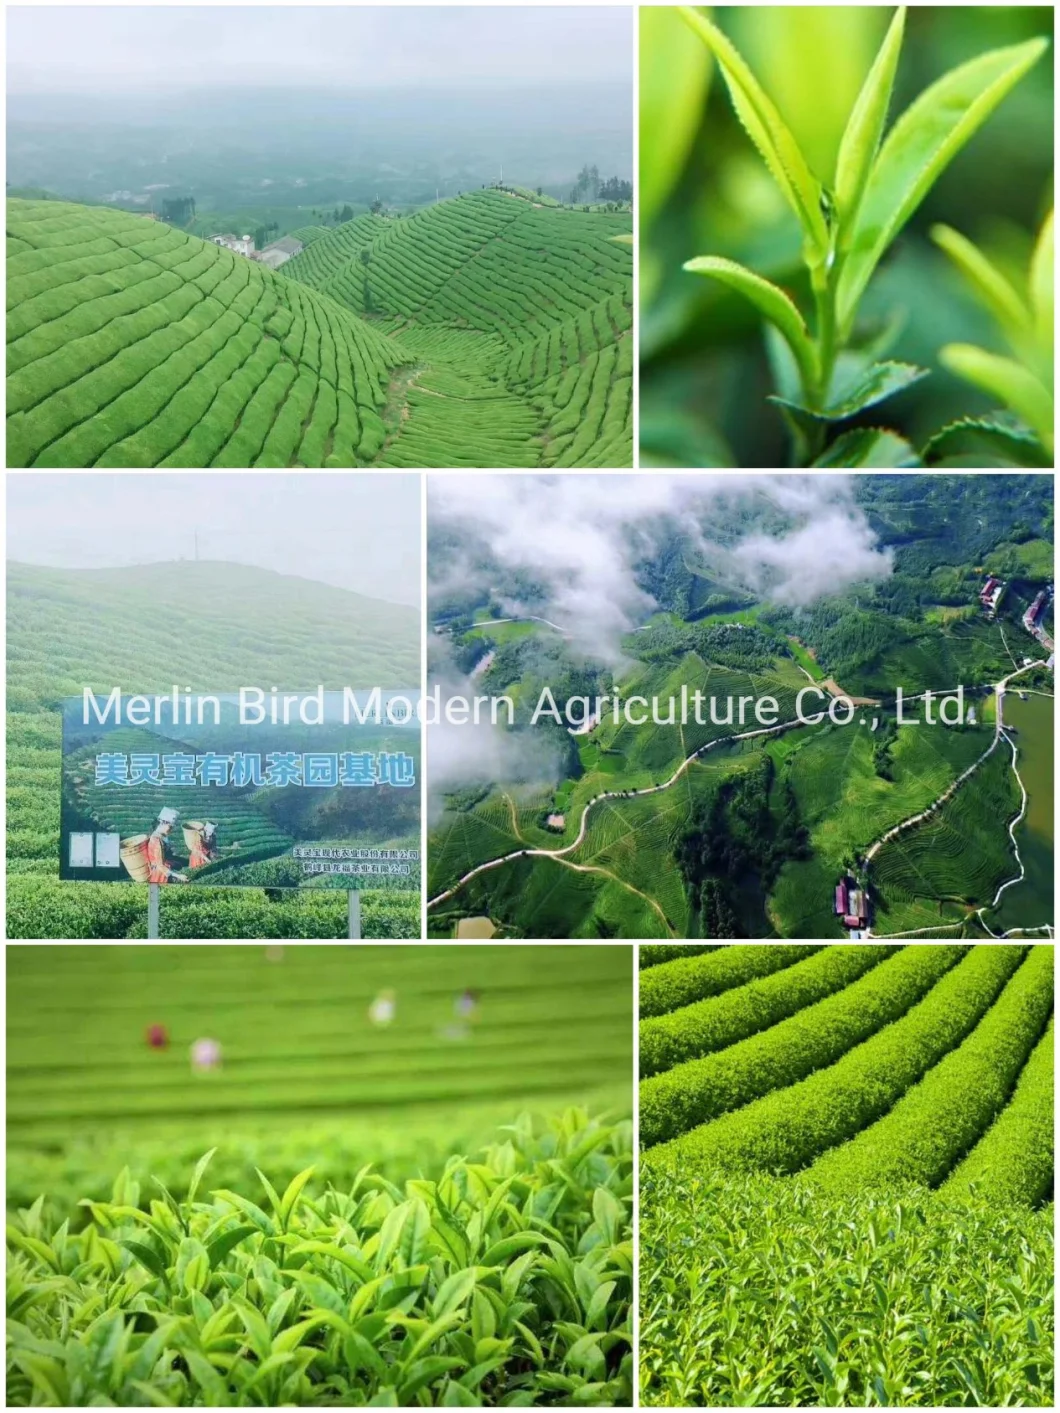 Wholesale & Retail Beauty Bamboo Loose Leaf Tea Herbal Tea Fresh Leaf Tea